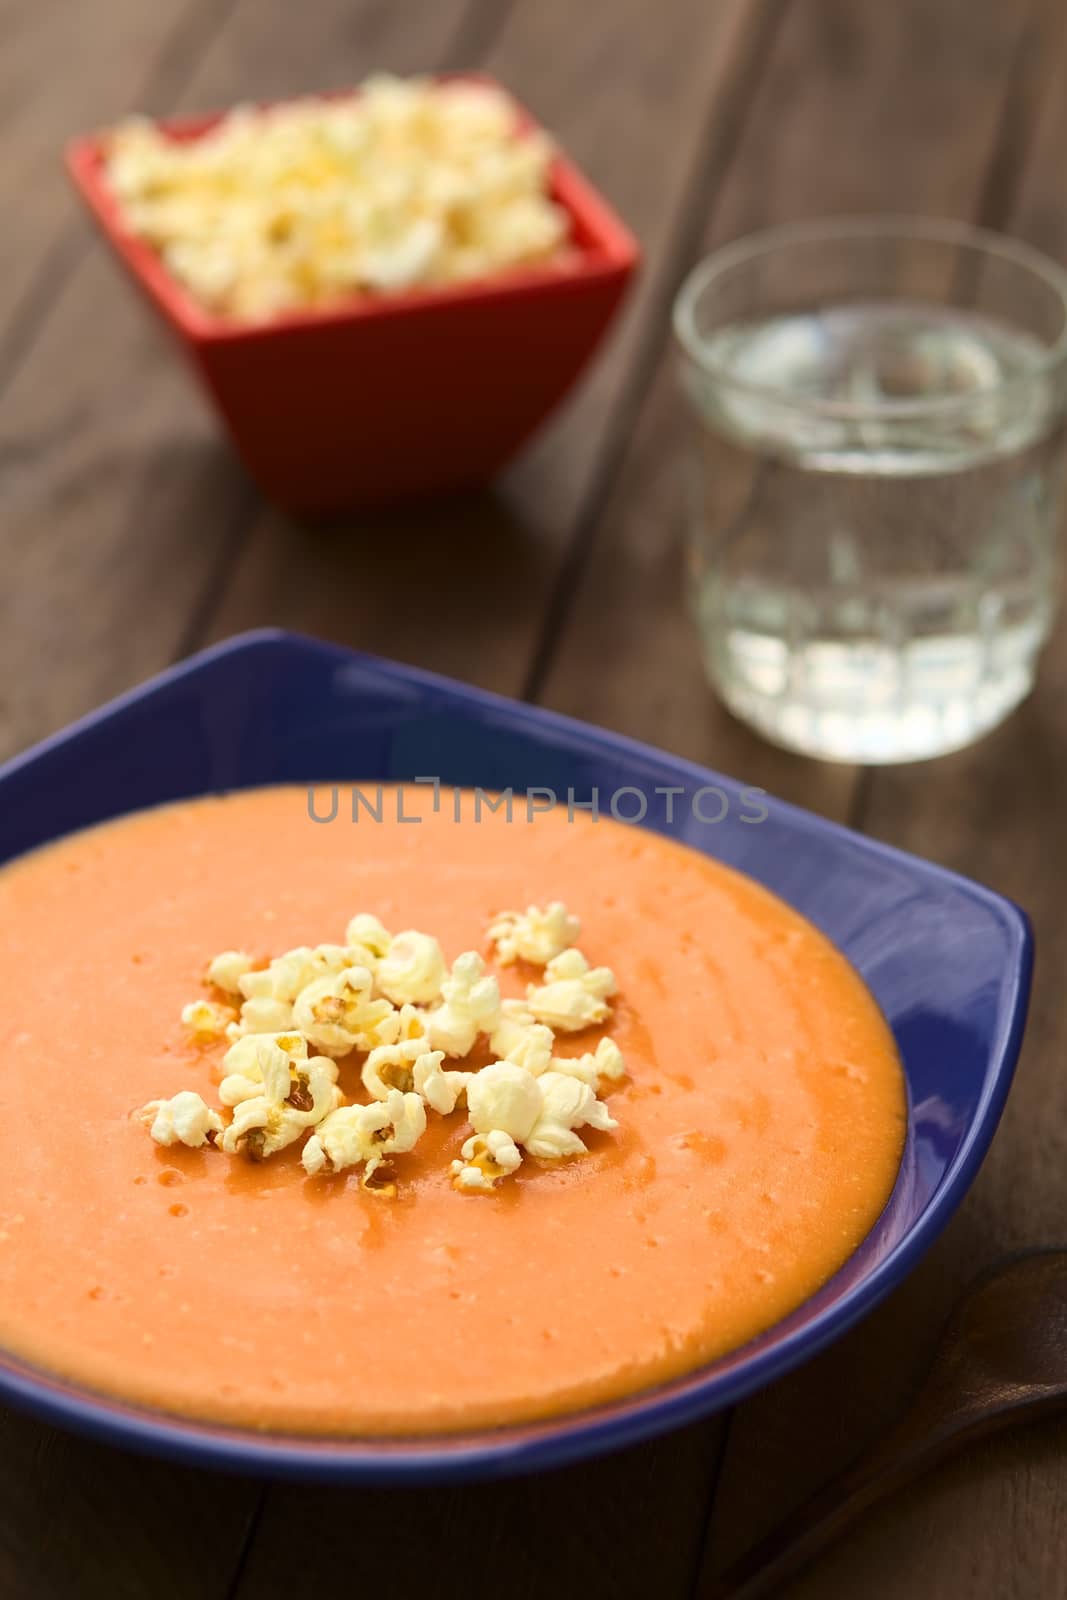 Ecuadorian Tomato and Potato Cream Soup with Popcorn by ildi